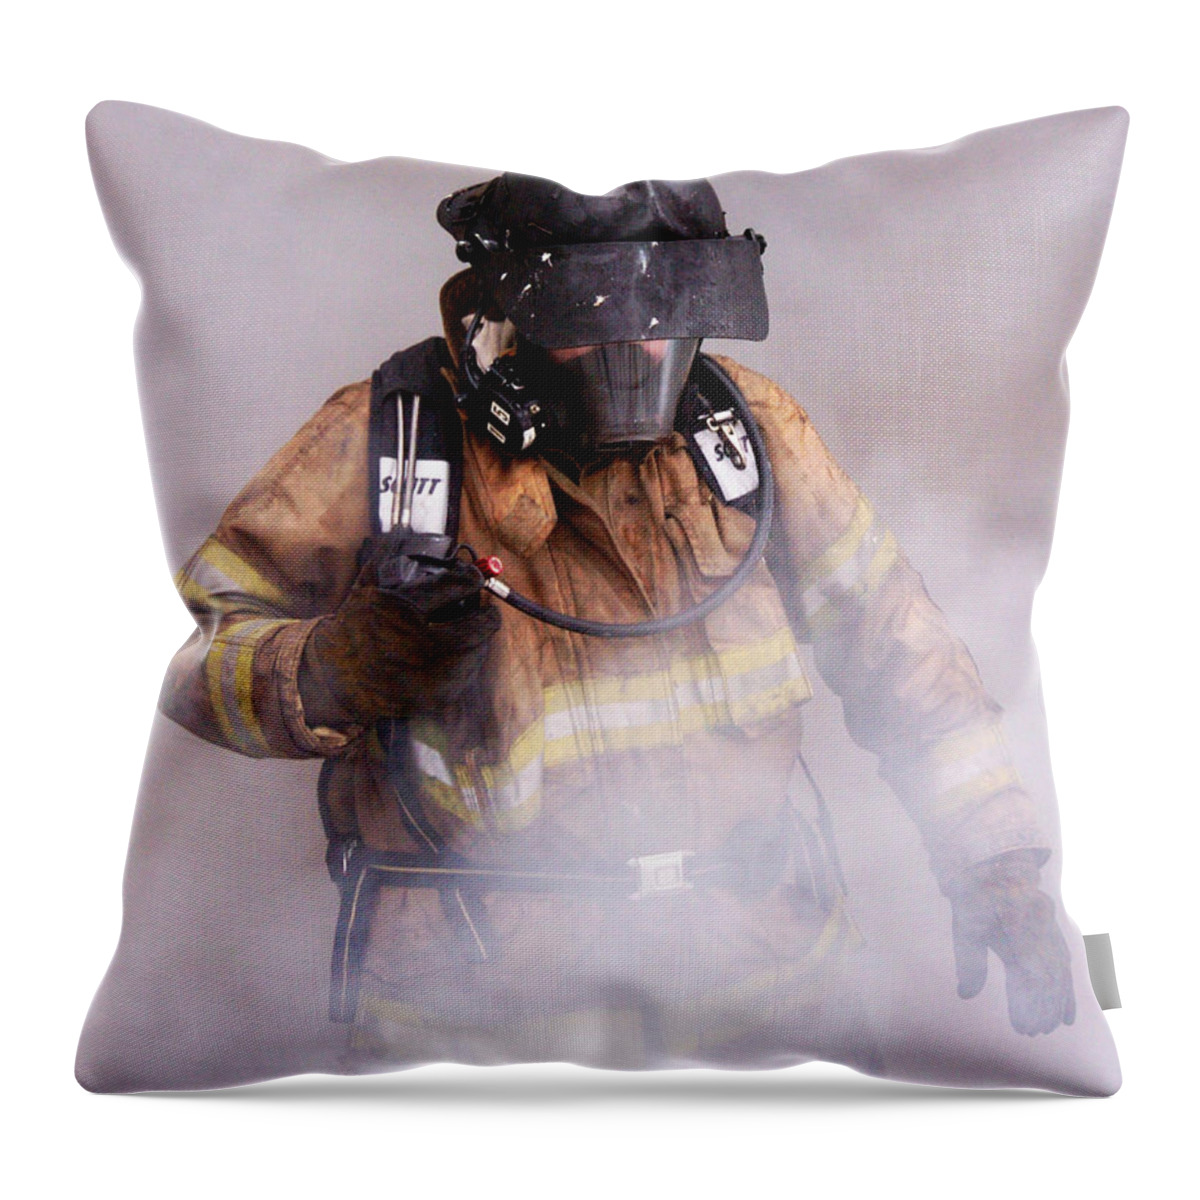 Fireman Throw Pillow featuring the photograph Firefighter by Wade Aiken